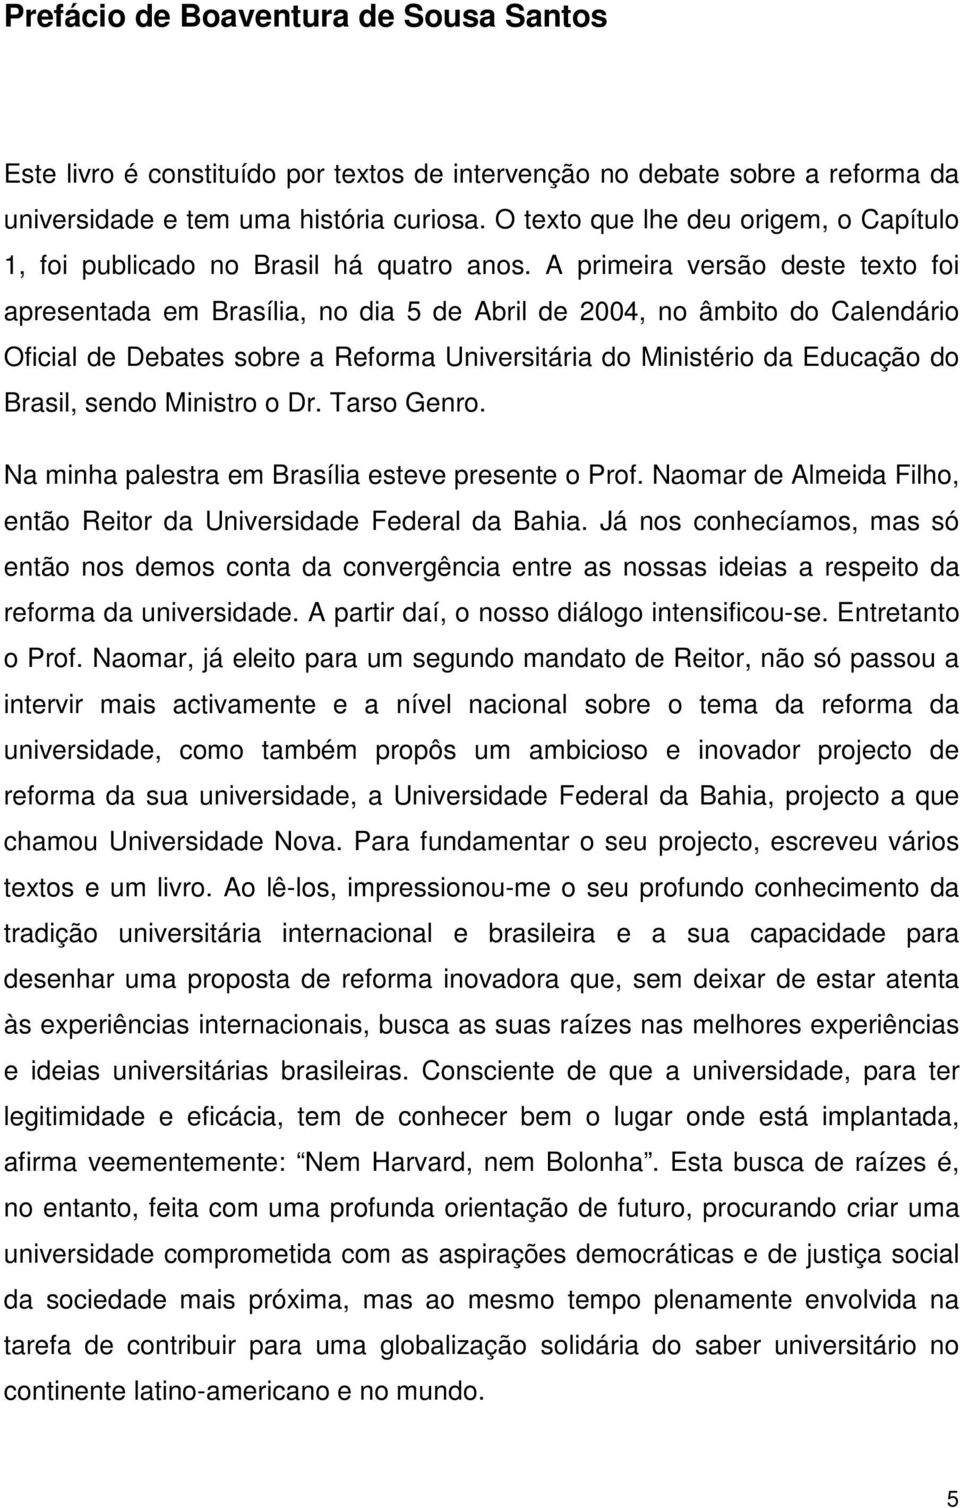 A primeira versão deste texto foi apresentada em Brasília, no dia 5 de Abril de 2004, no âmbito do Calendário Oficial de Debates sobre a Reforma Universitária do Ministério da Educação do Brasil,